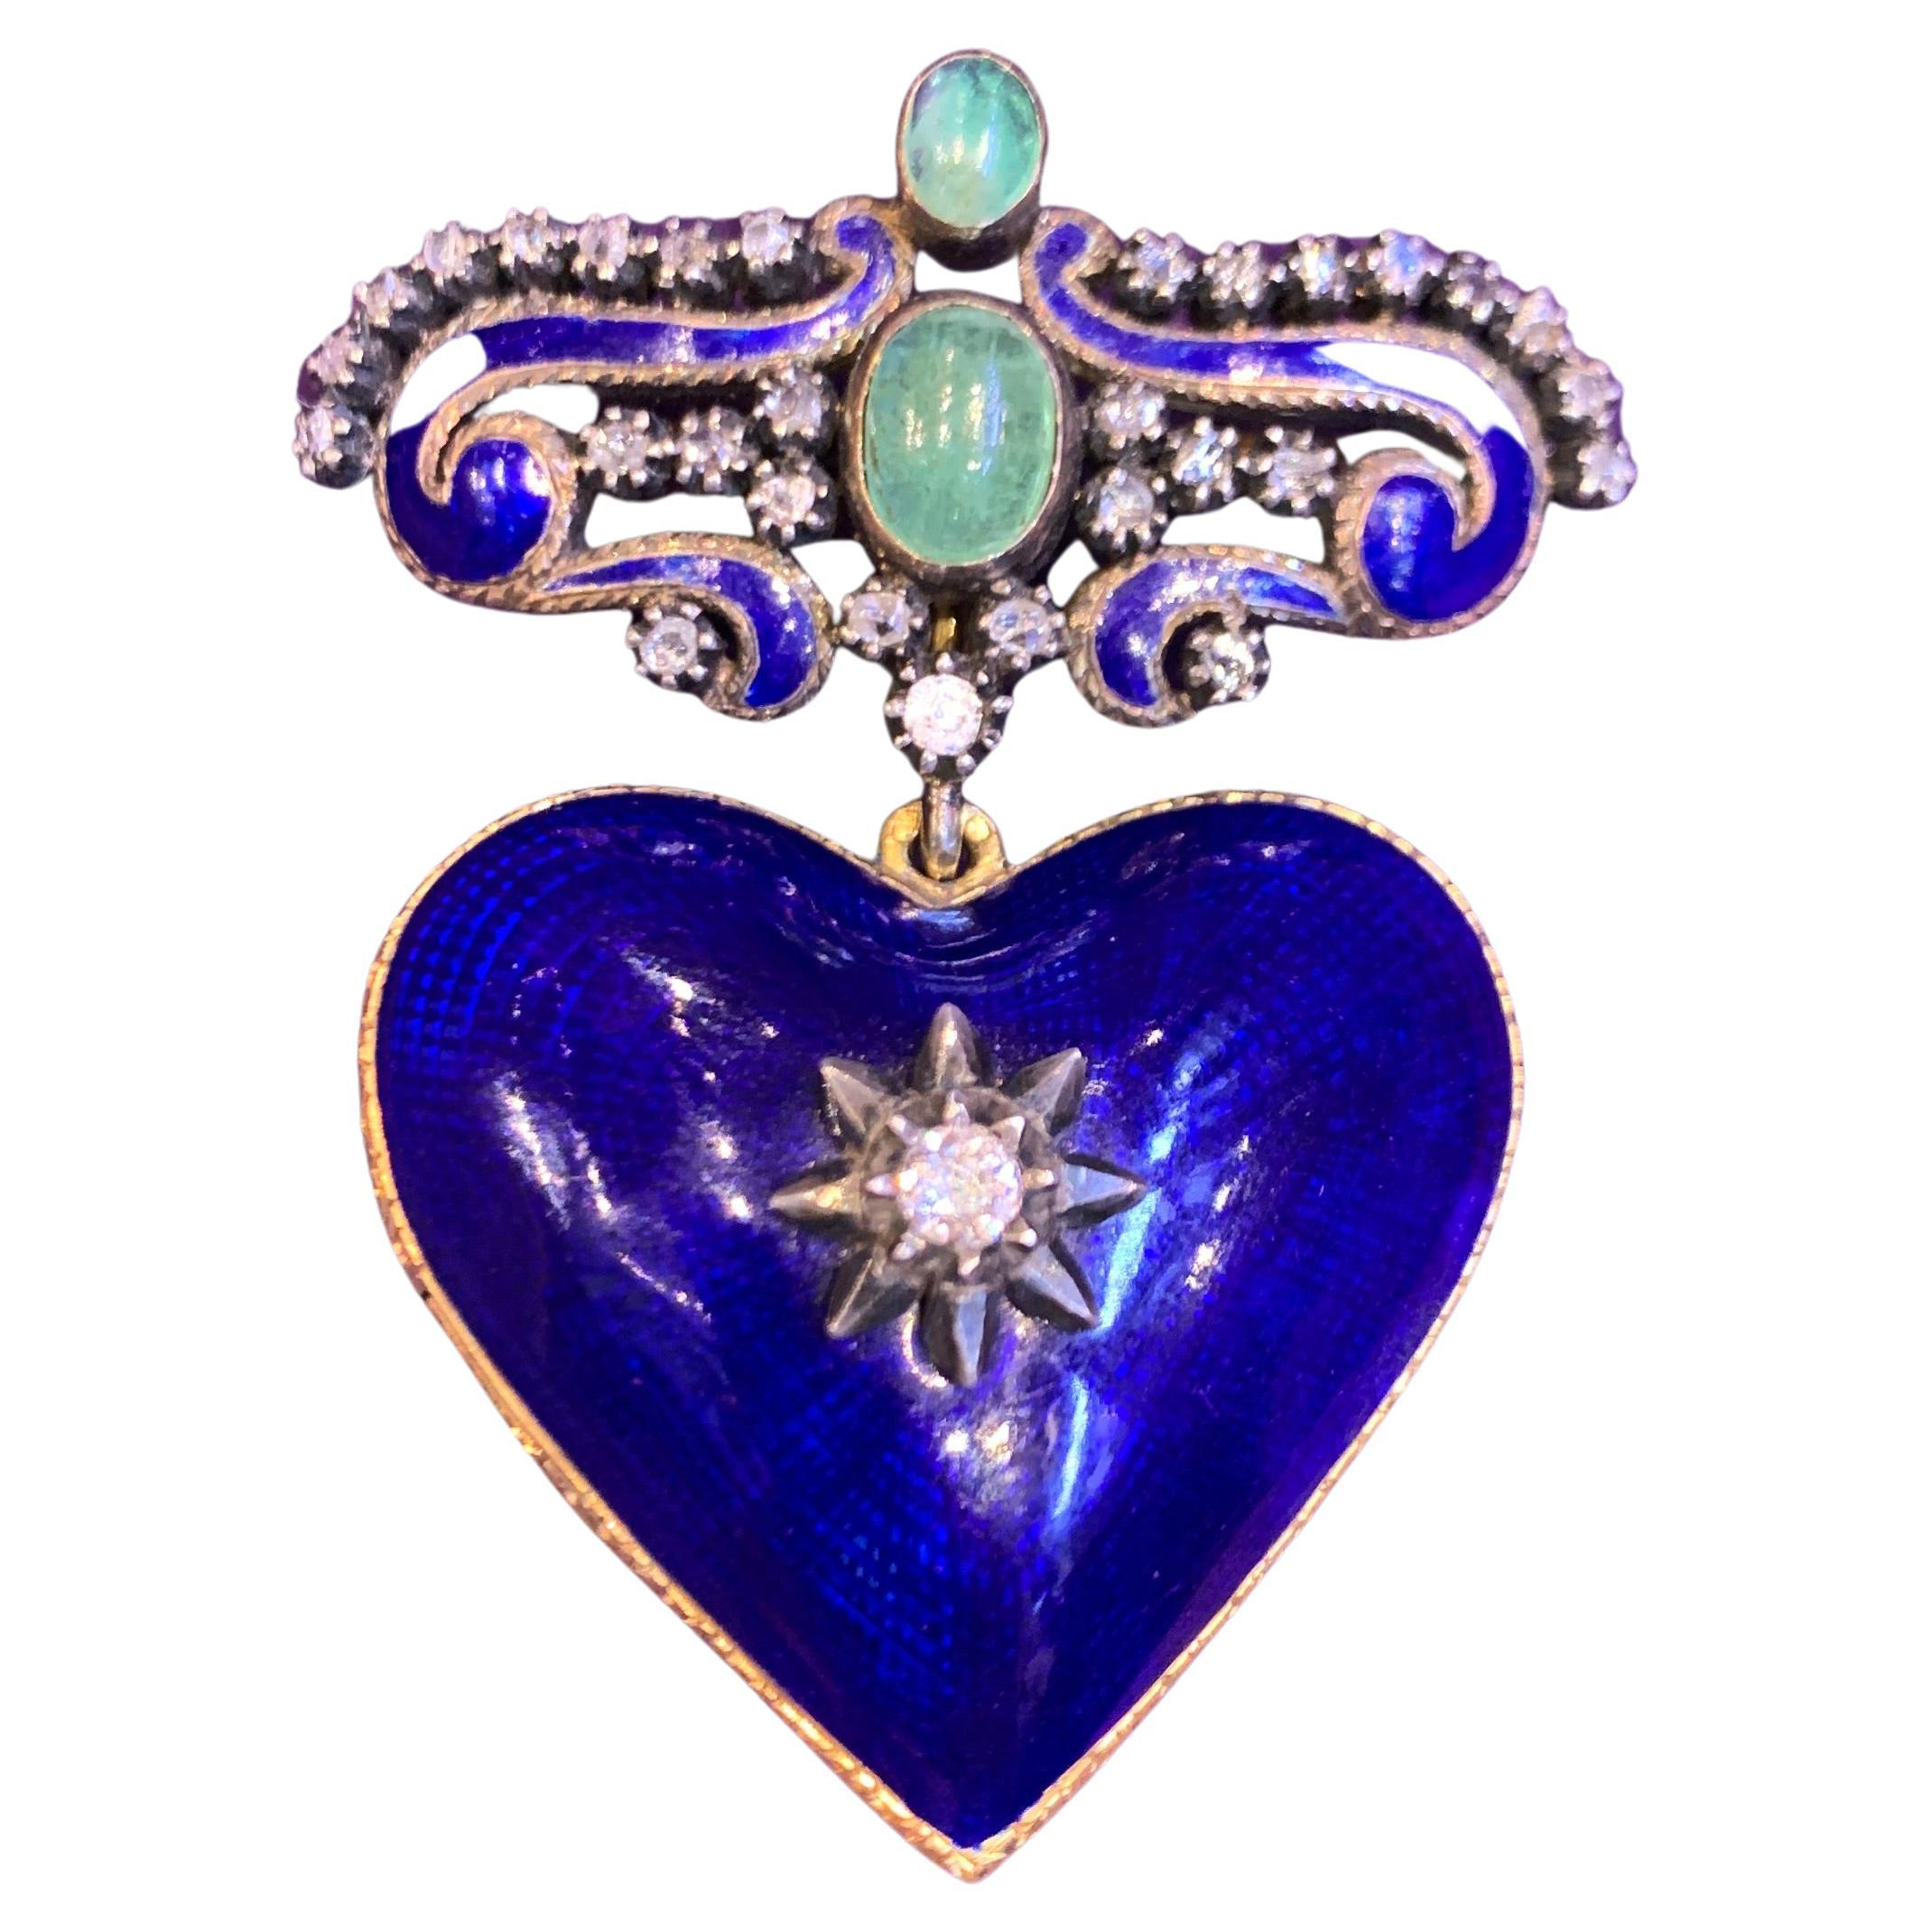 Antique Enamel Heart Shaped Locket Brooch For Sale